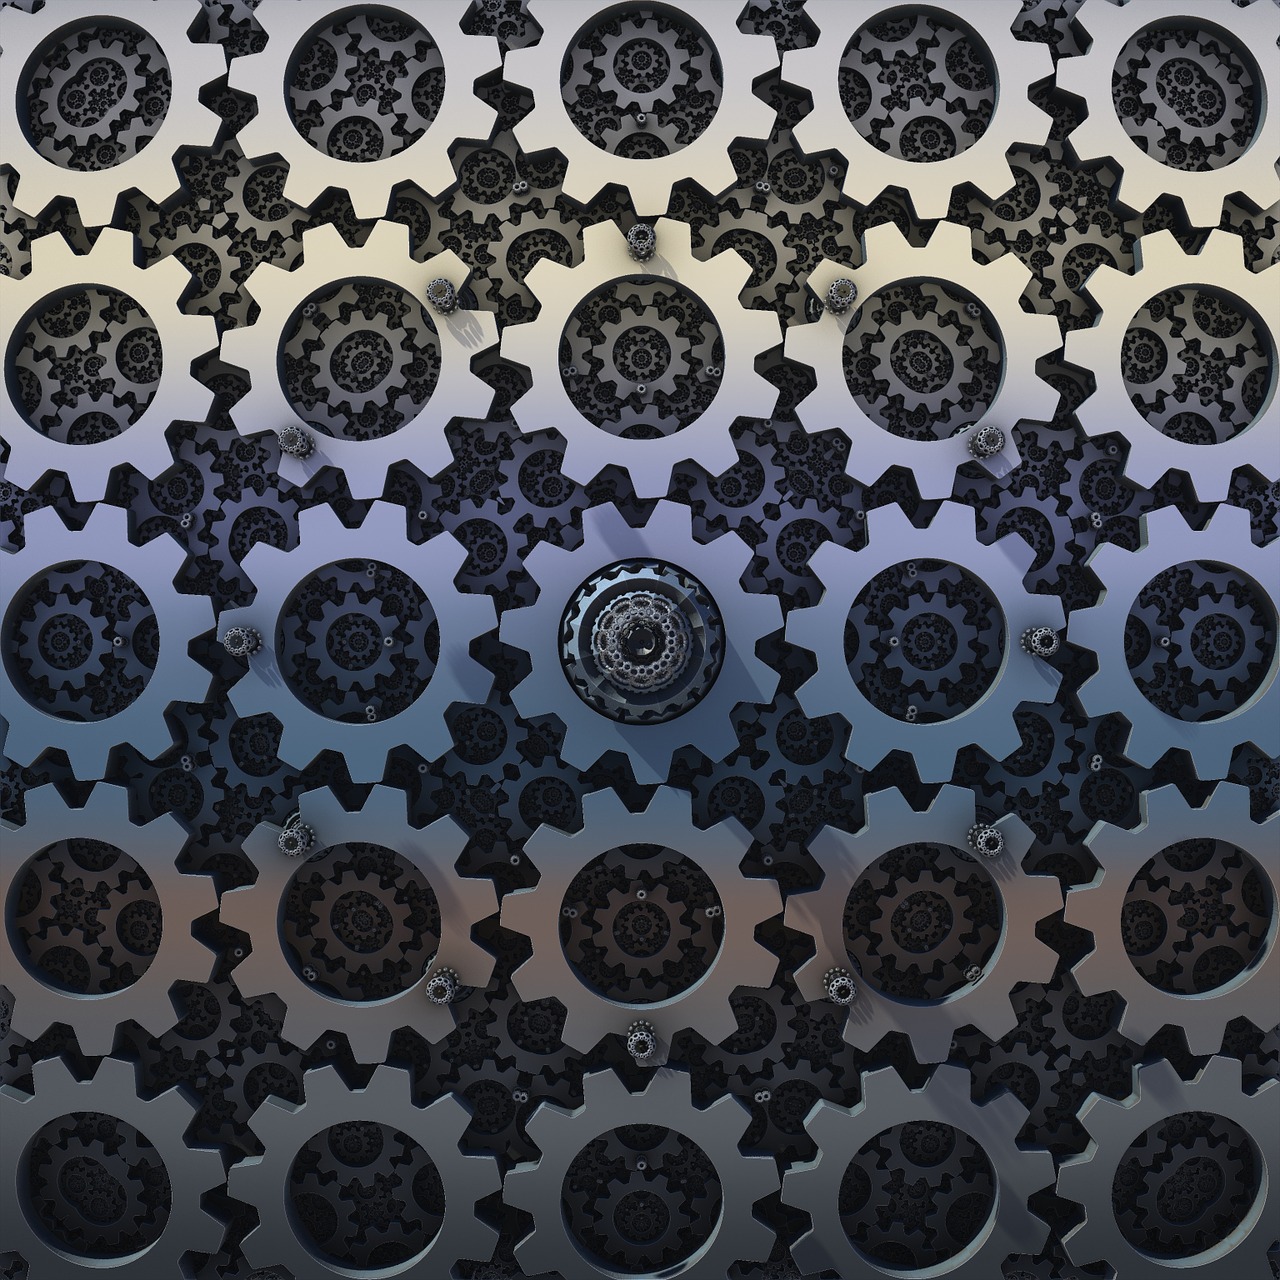 gears fractal render free photo